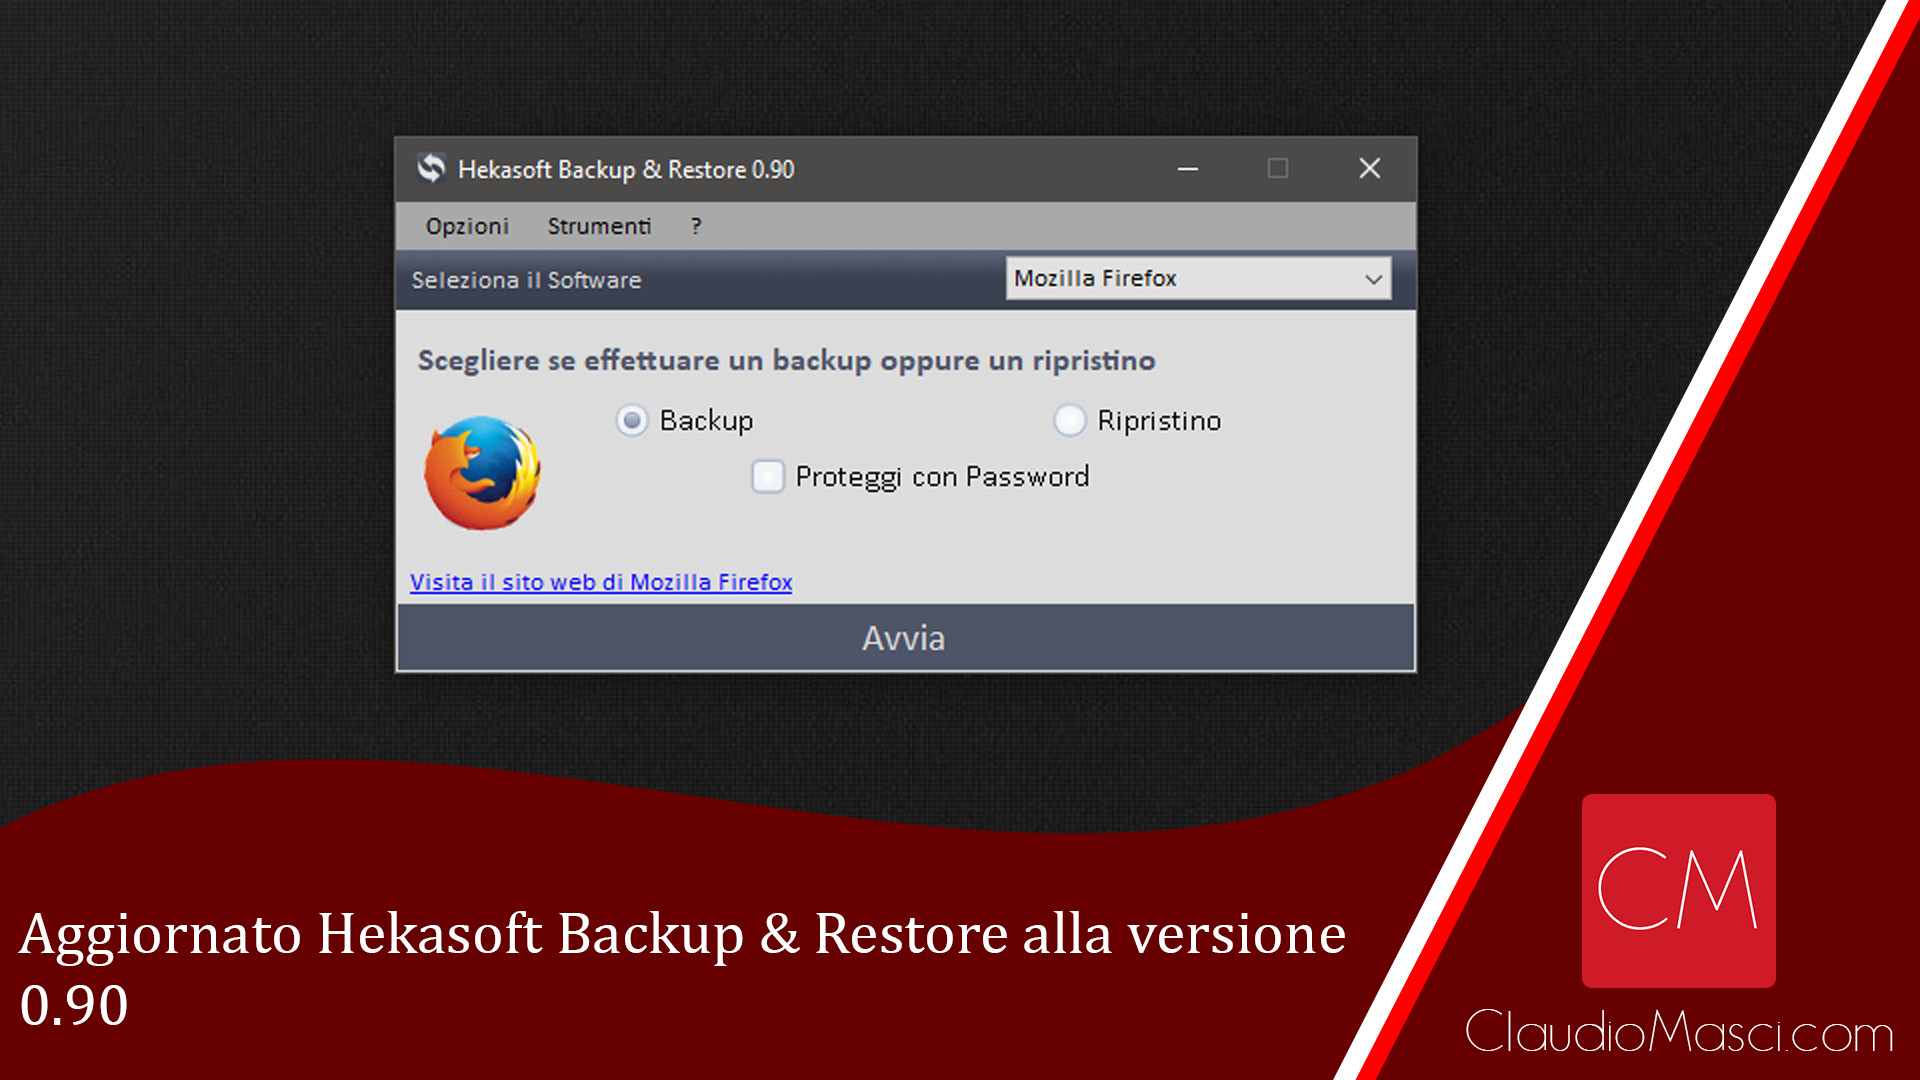 Aggiornato Hekasoft Backup & Restore alla versione 0.90